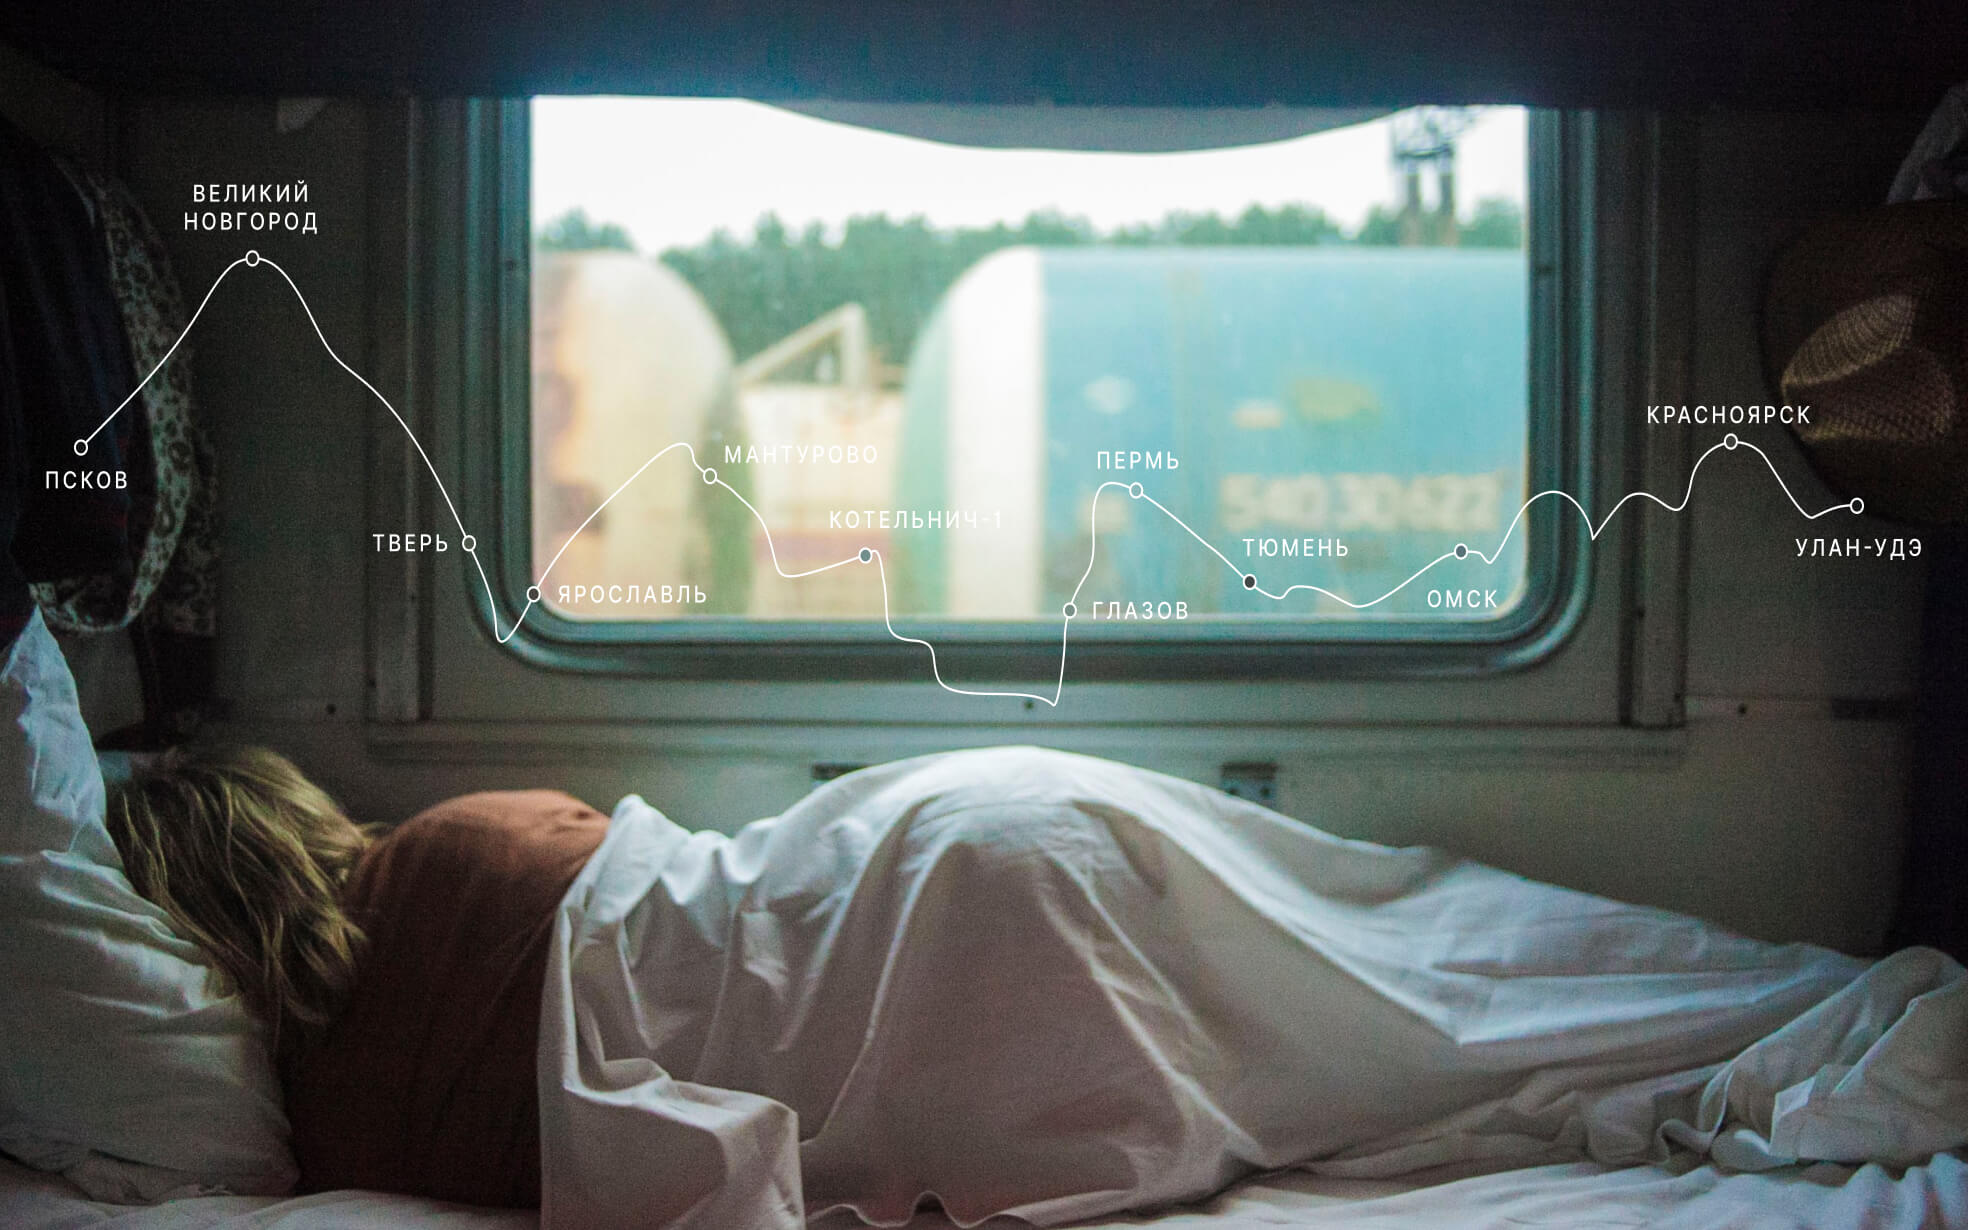 Окно поезда с картой путешествия